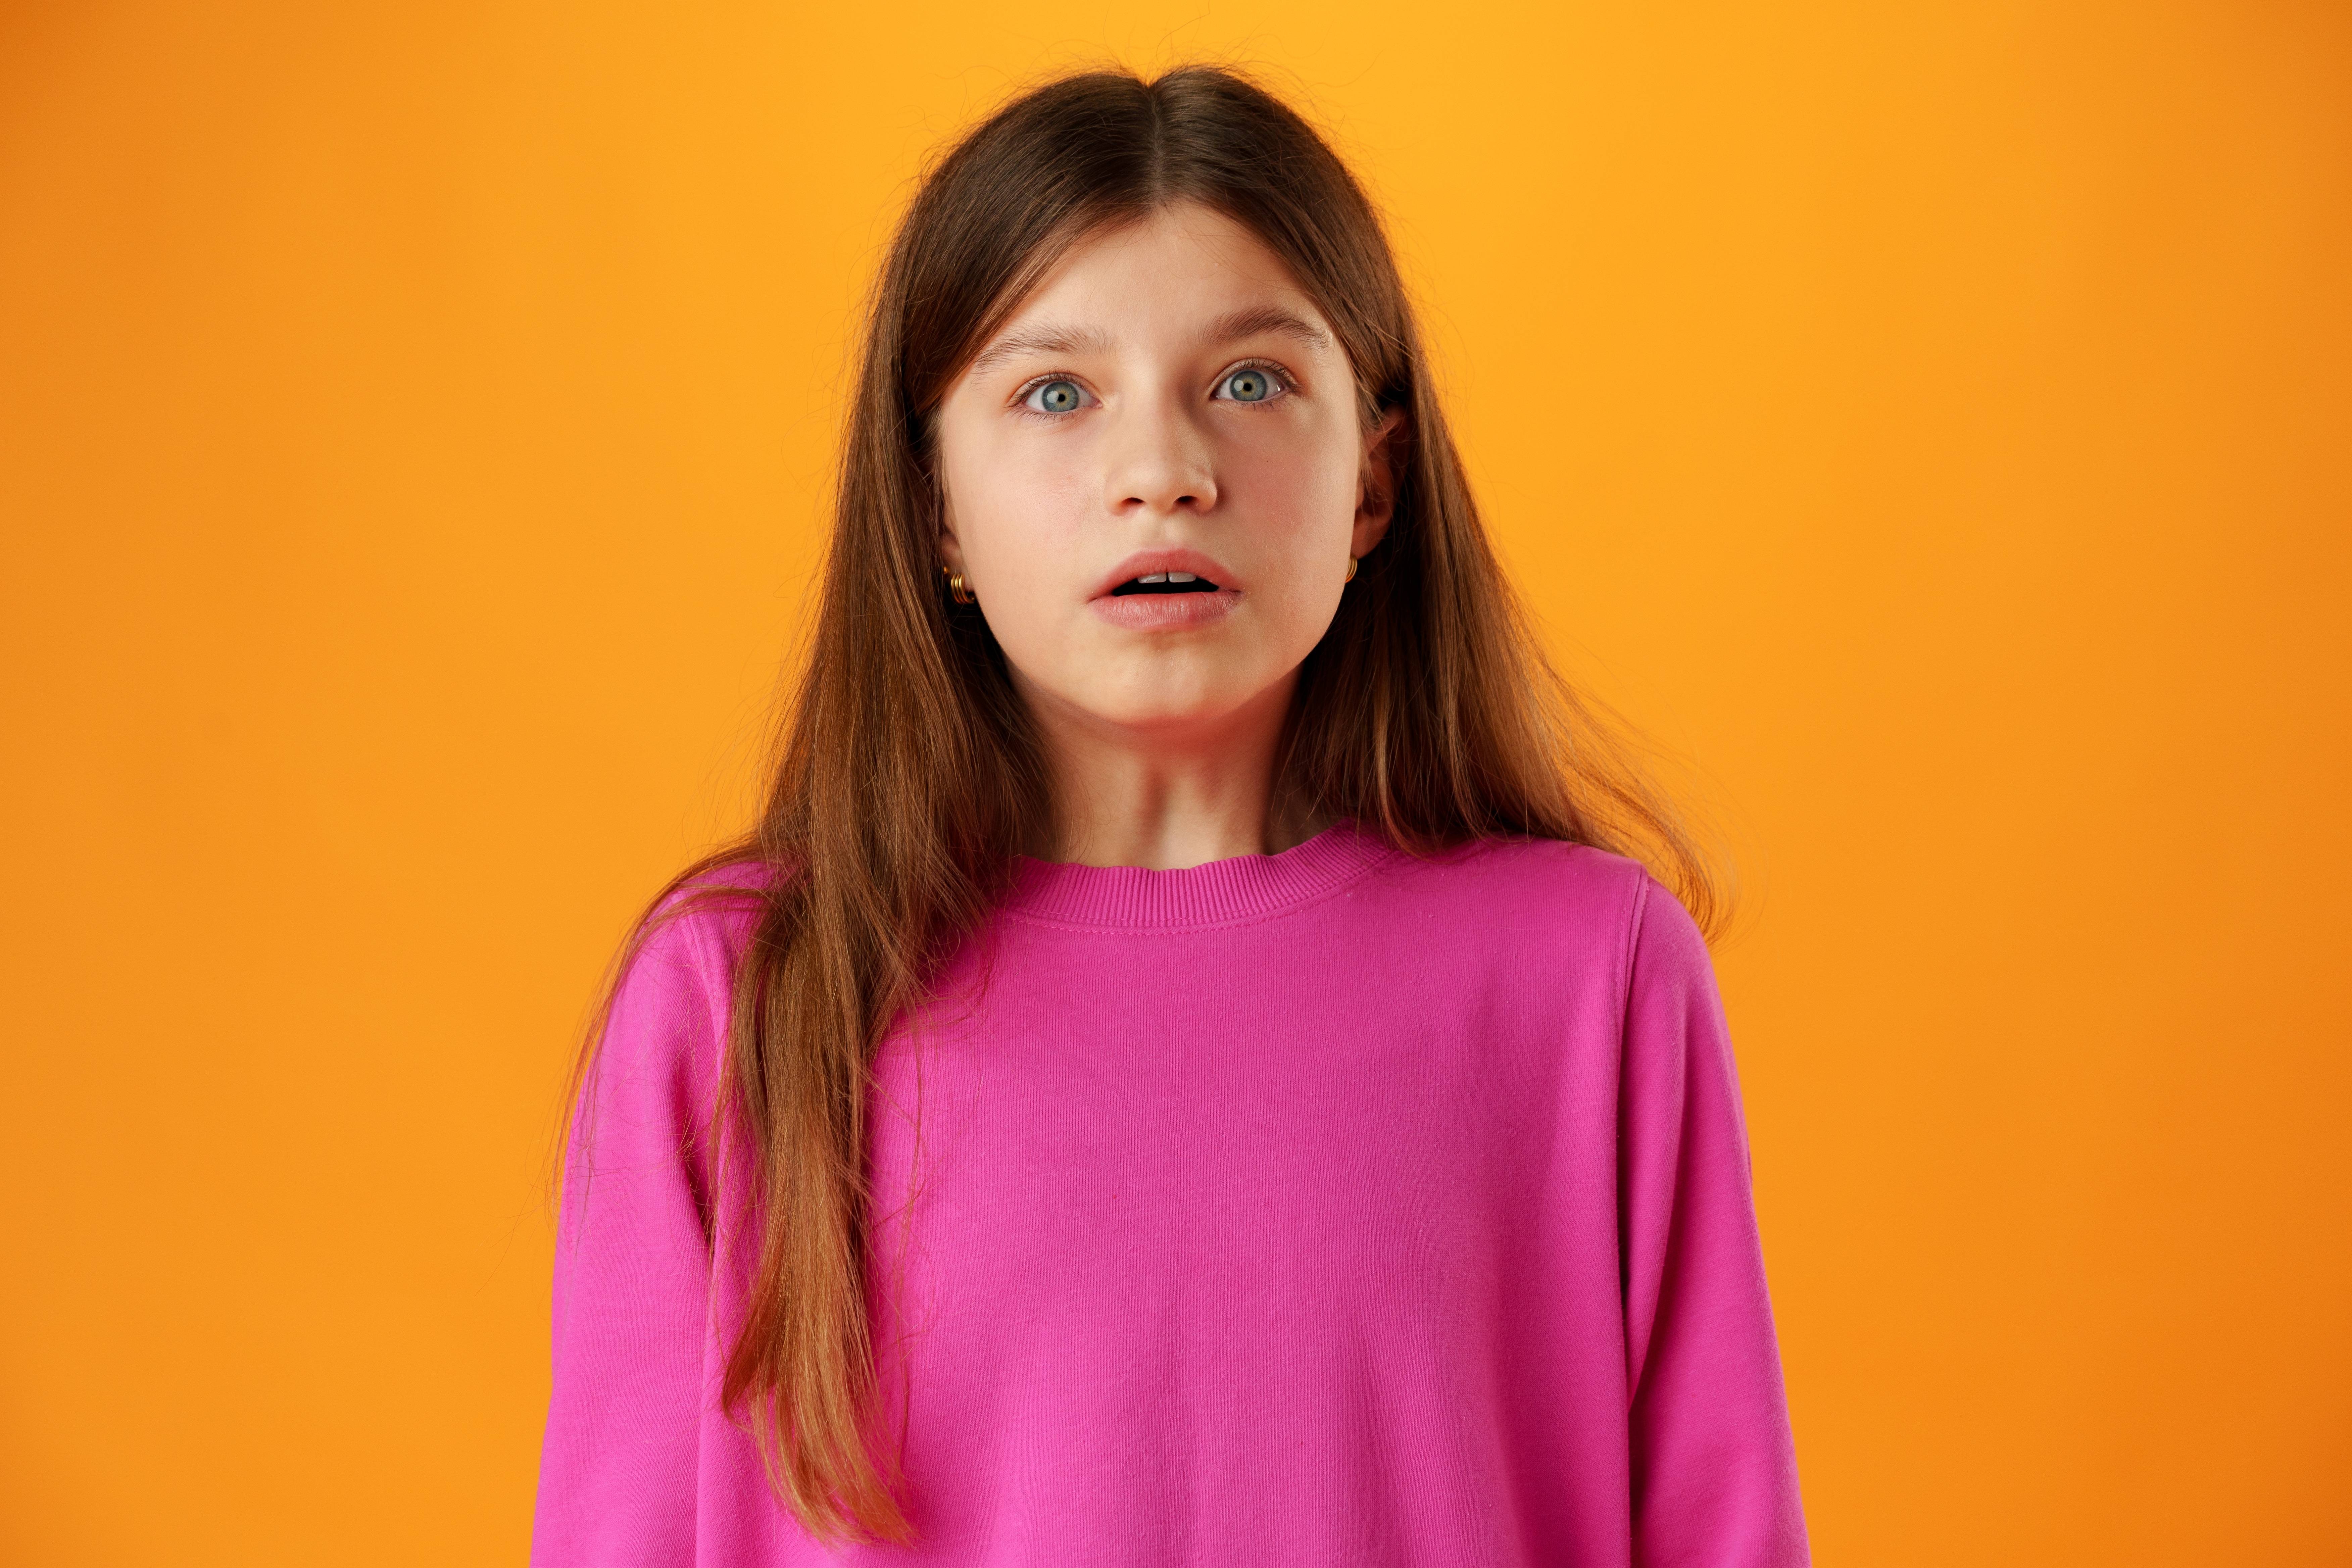 A shocked teen girl | Shutterstock